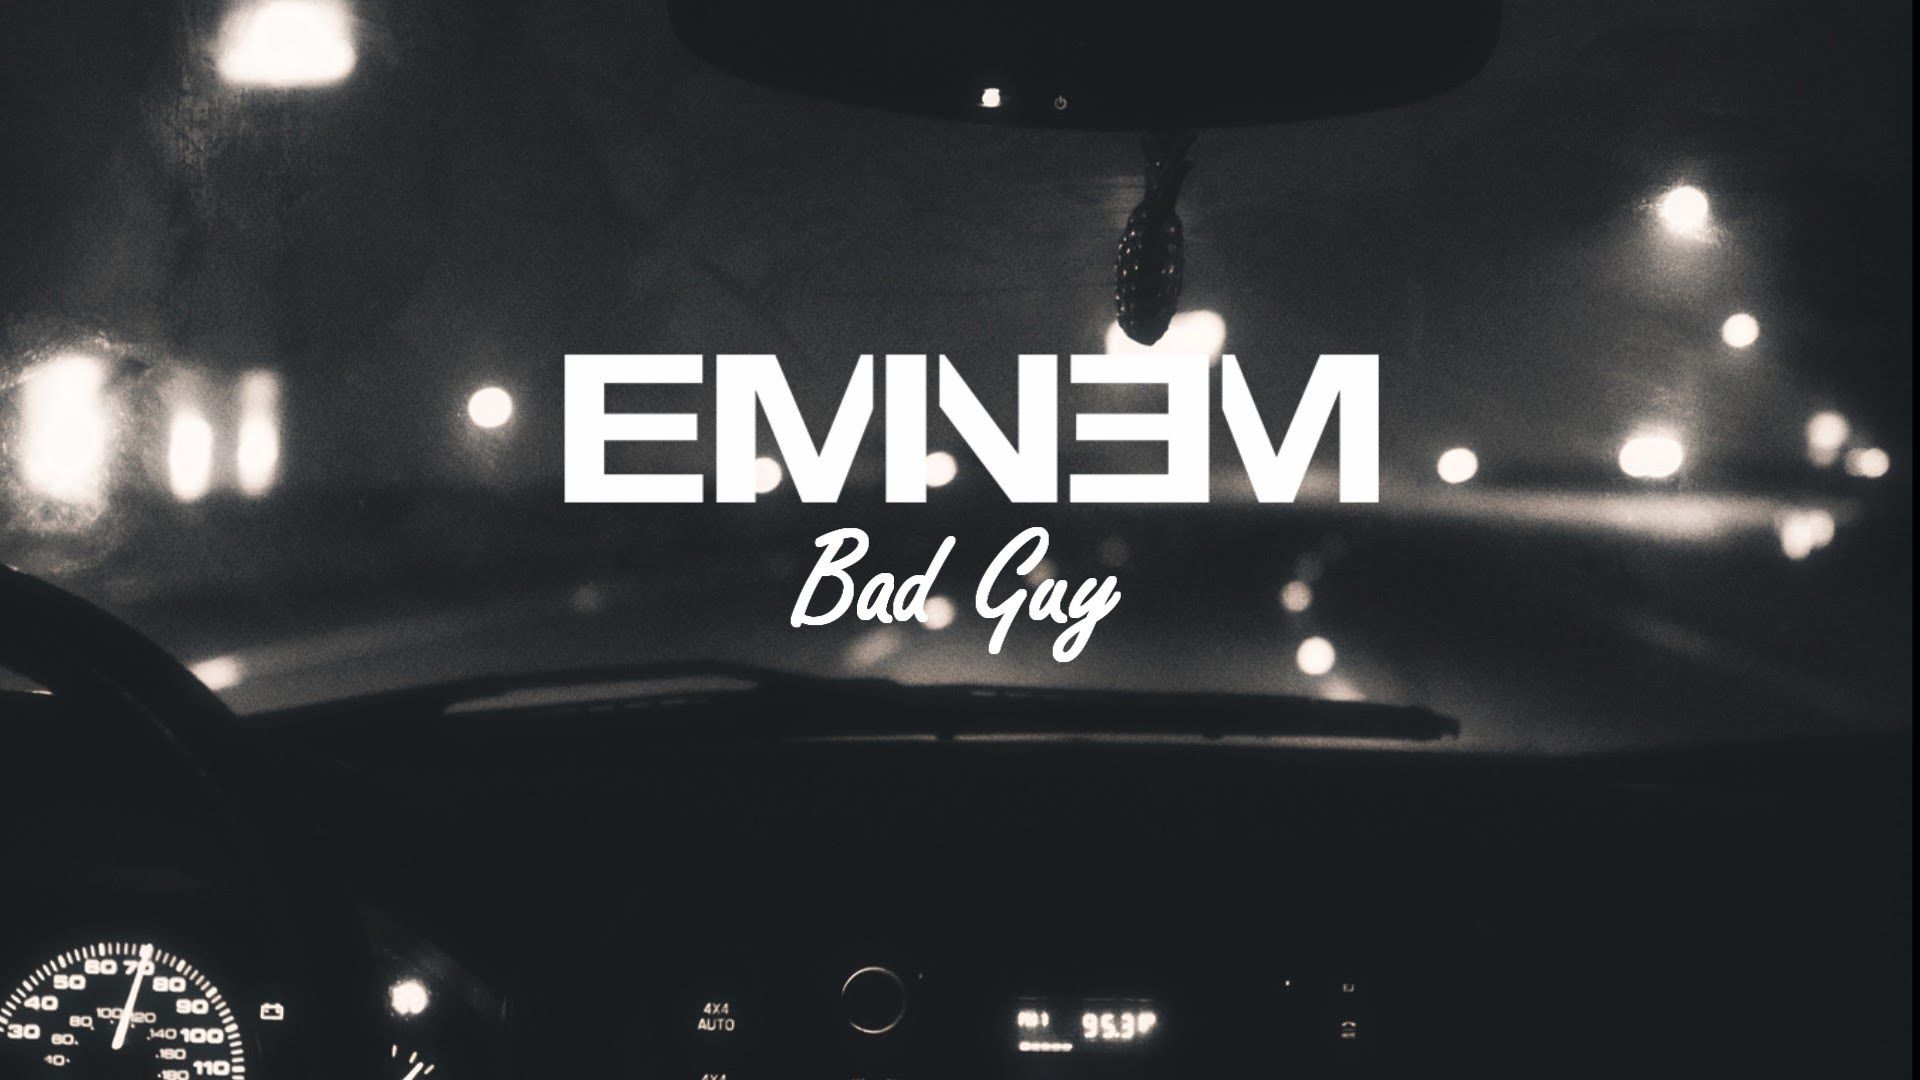 Eminem - Bad Guy (Music Video)(Explicit) - YouTube